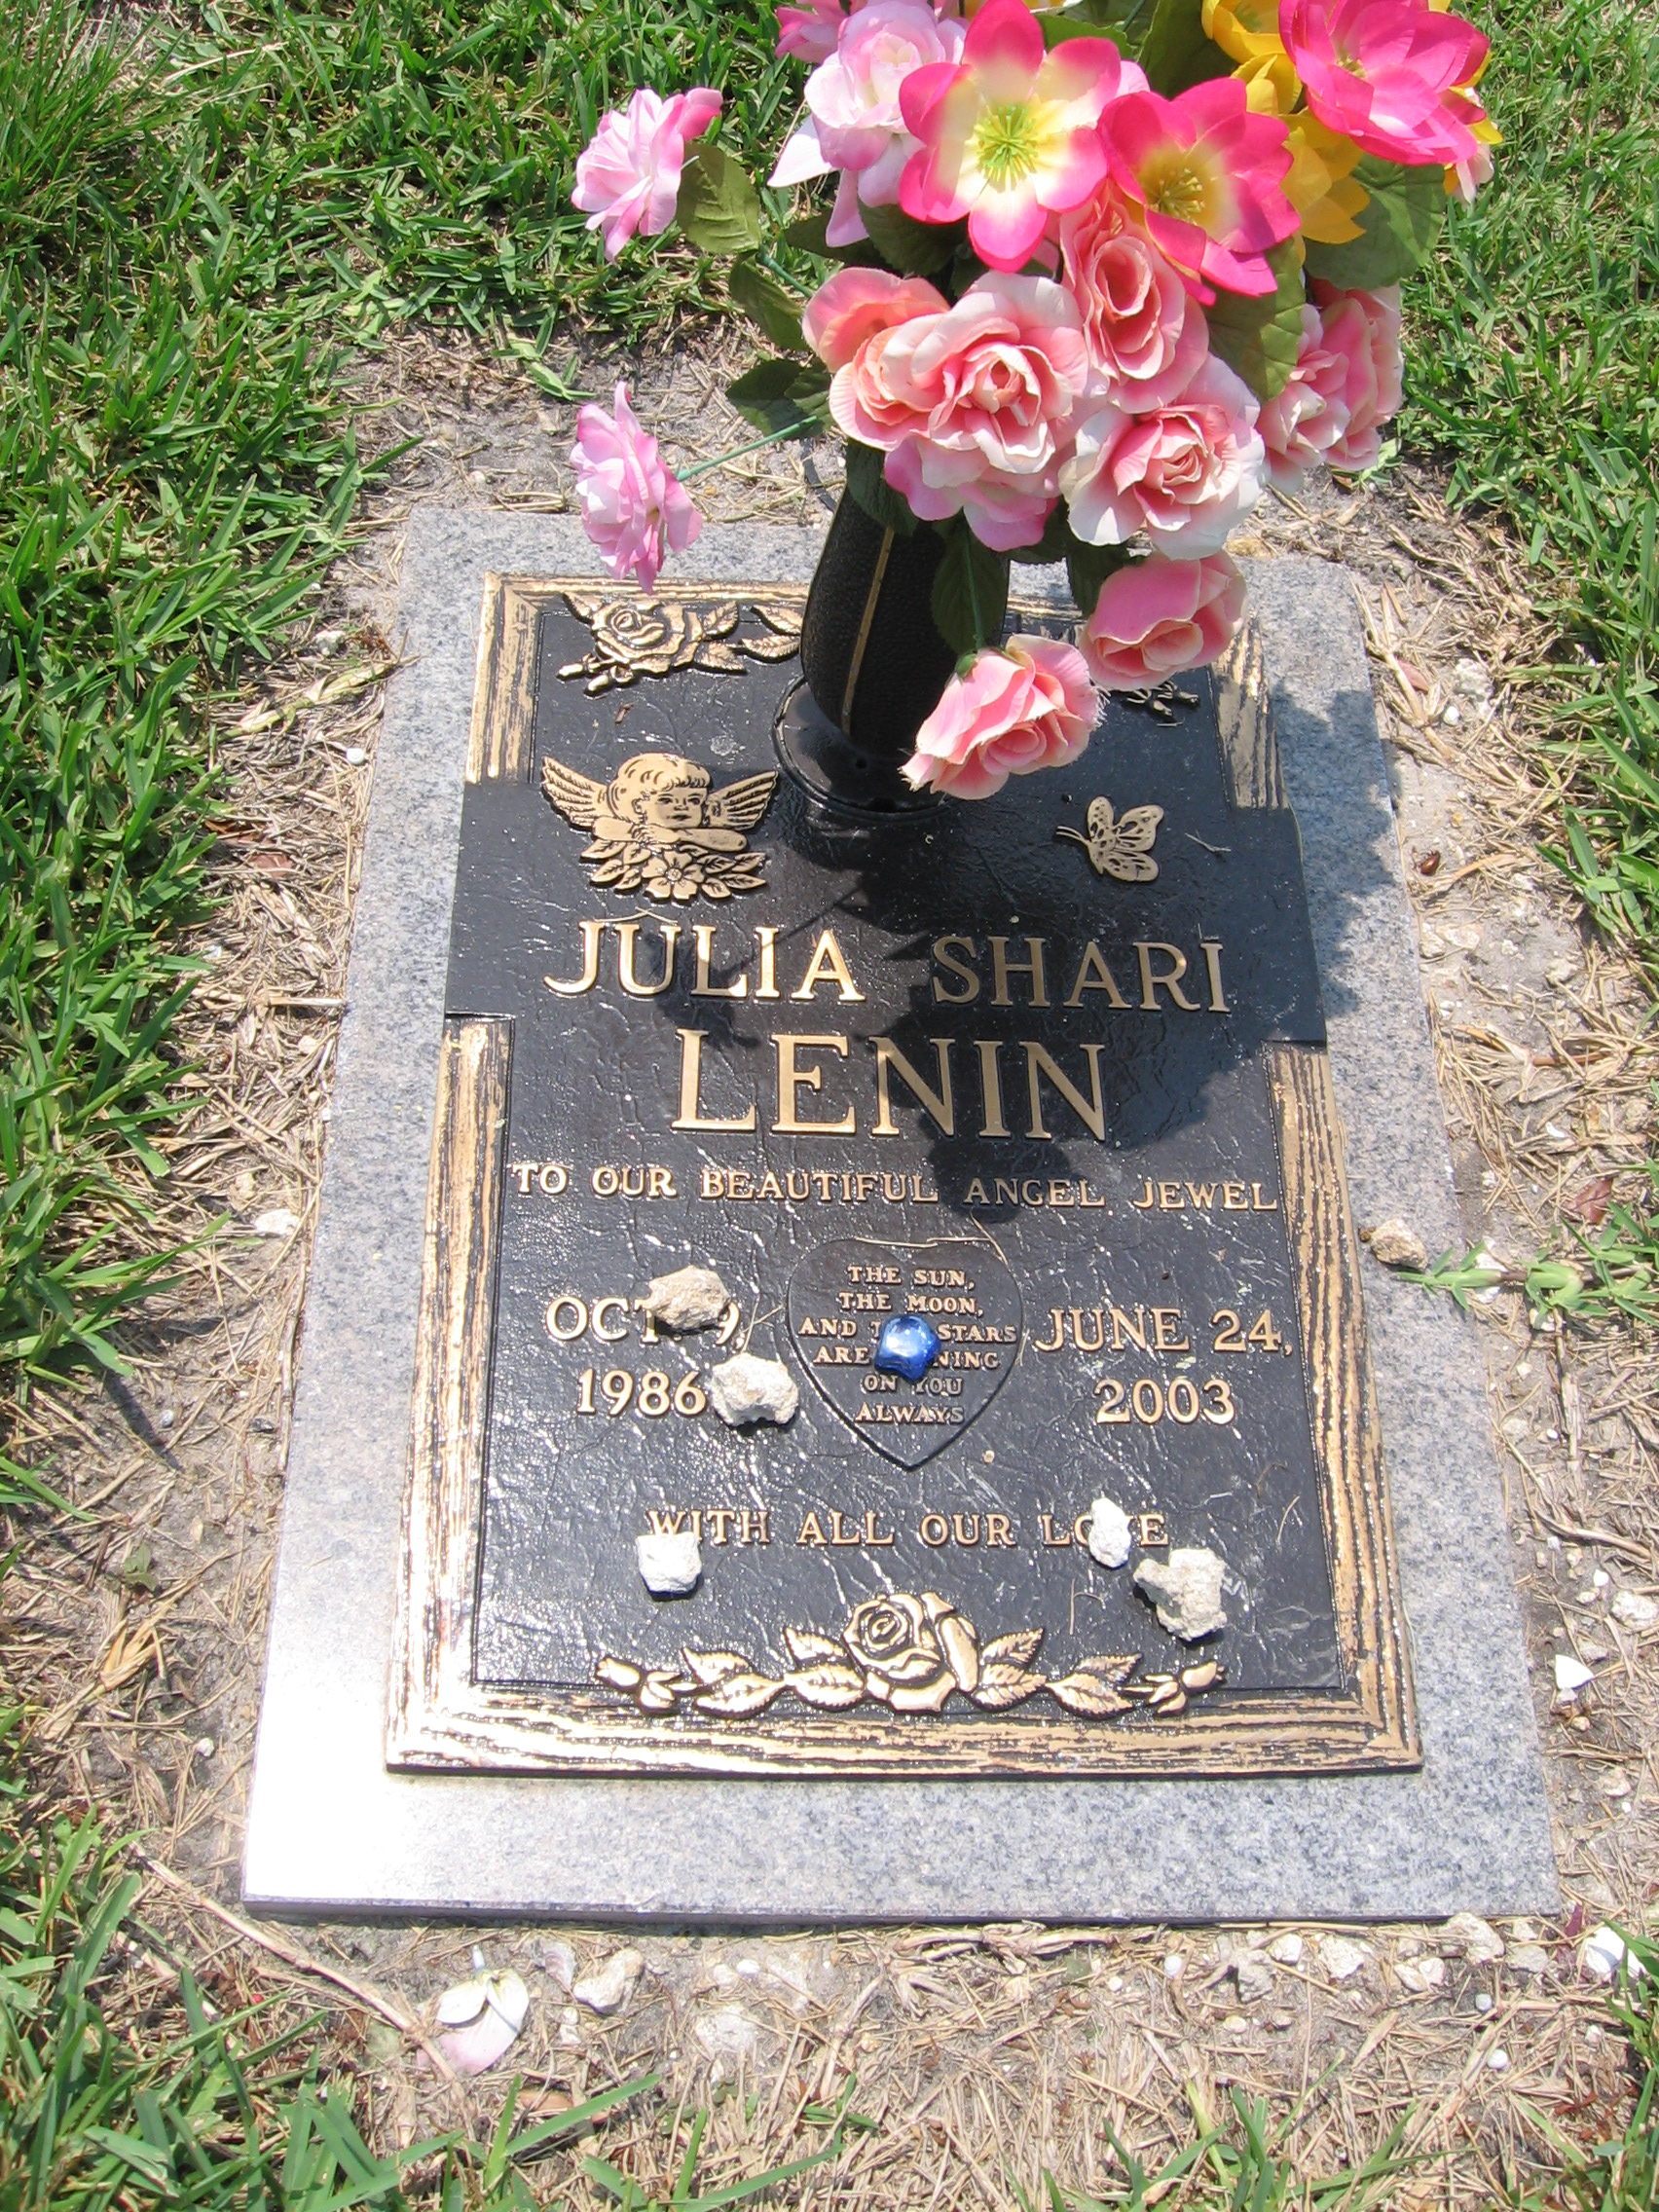 Julia Shari Lenin